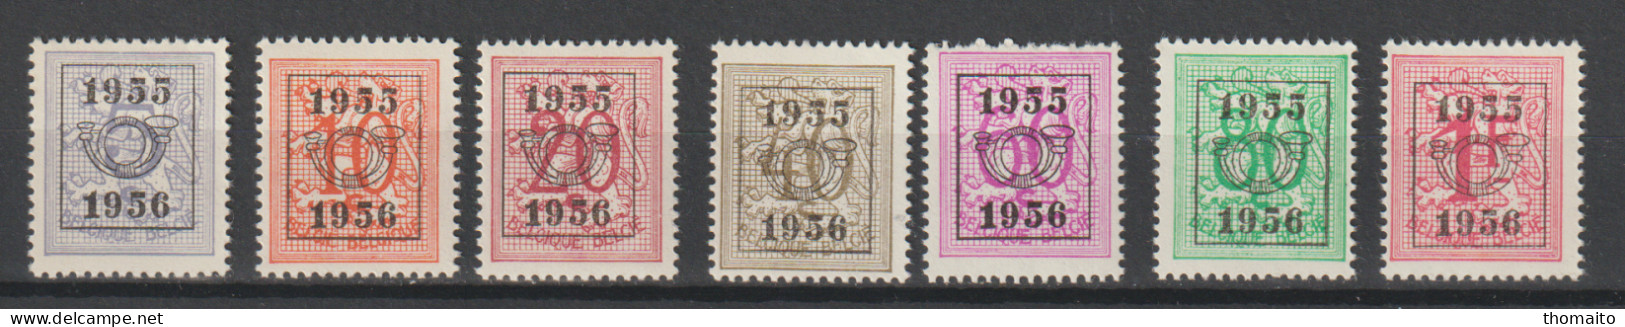 België/Belgique - OBP/COB PRE652-658 - 1955/1956 - Cijfer Op Heraldieke Leeuw - MNH/NSC/** - Typo Precancels 1951-80 (Figure On Lion)